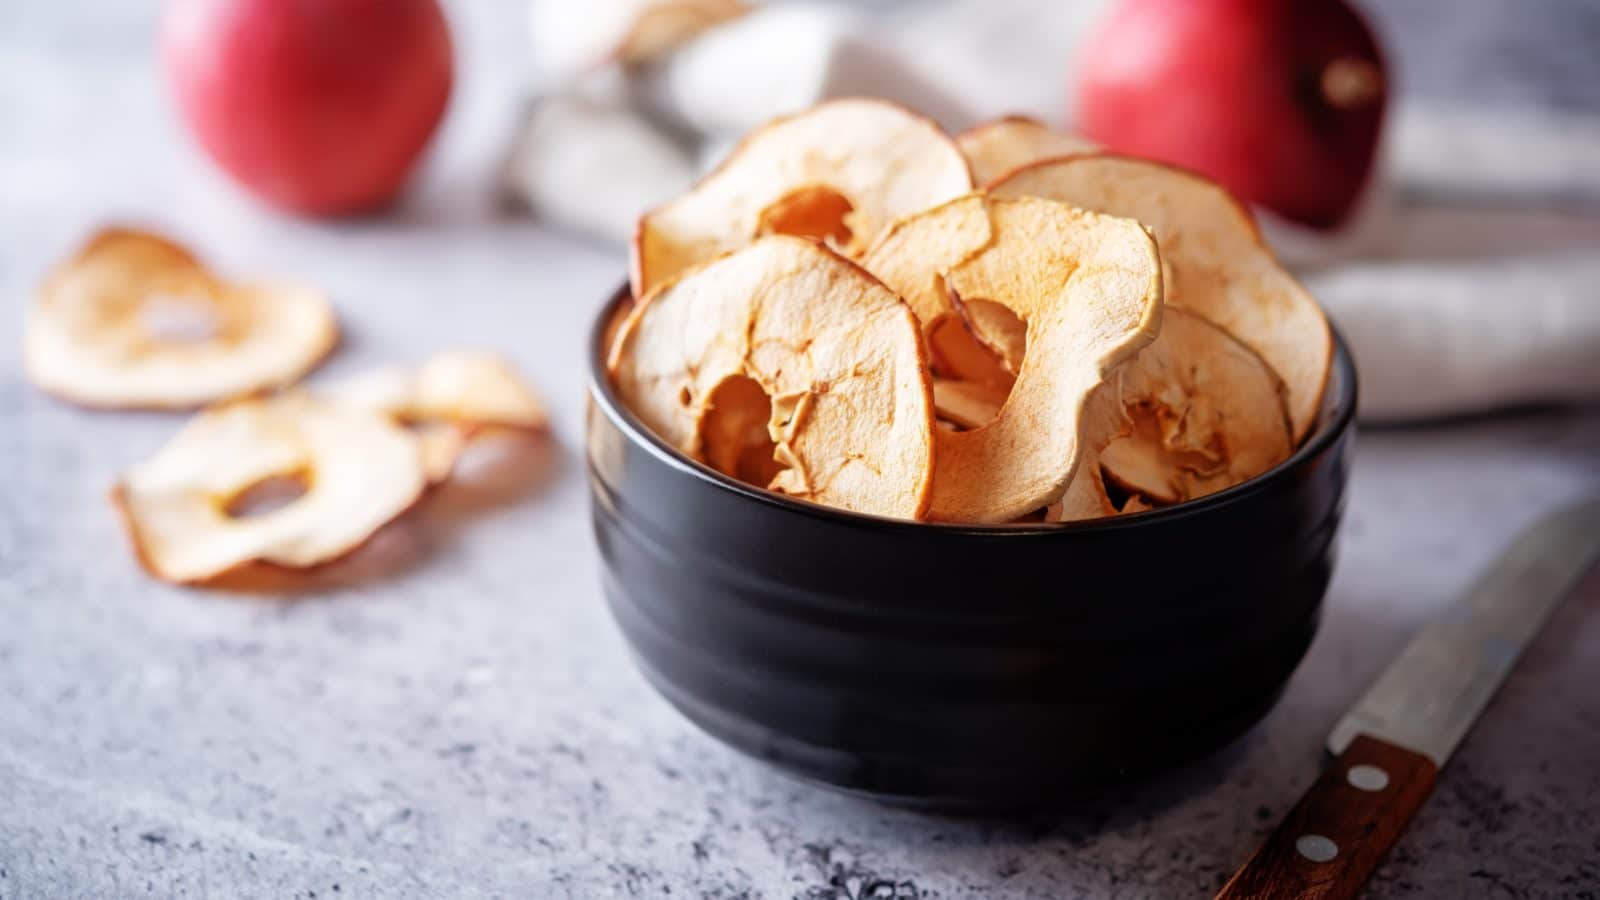 Suhe jabuke: 17 ljekovitih svojstava